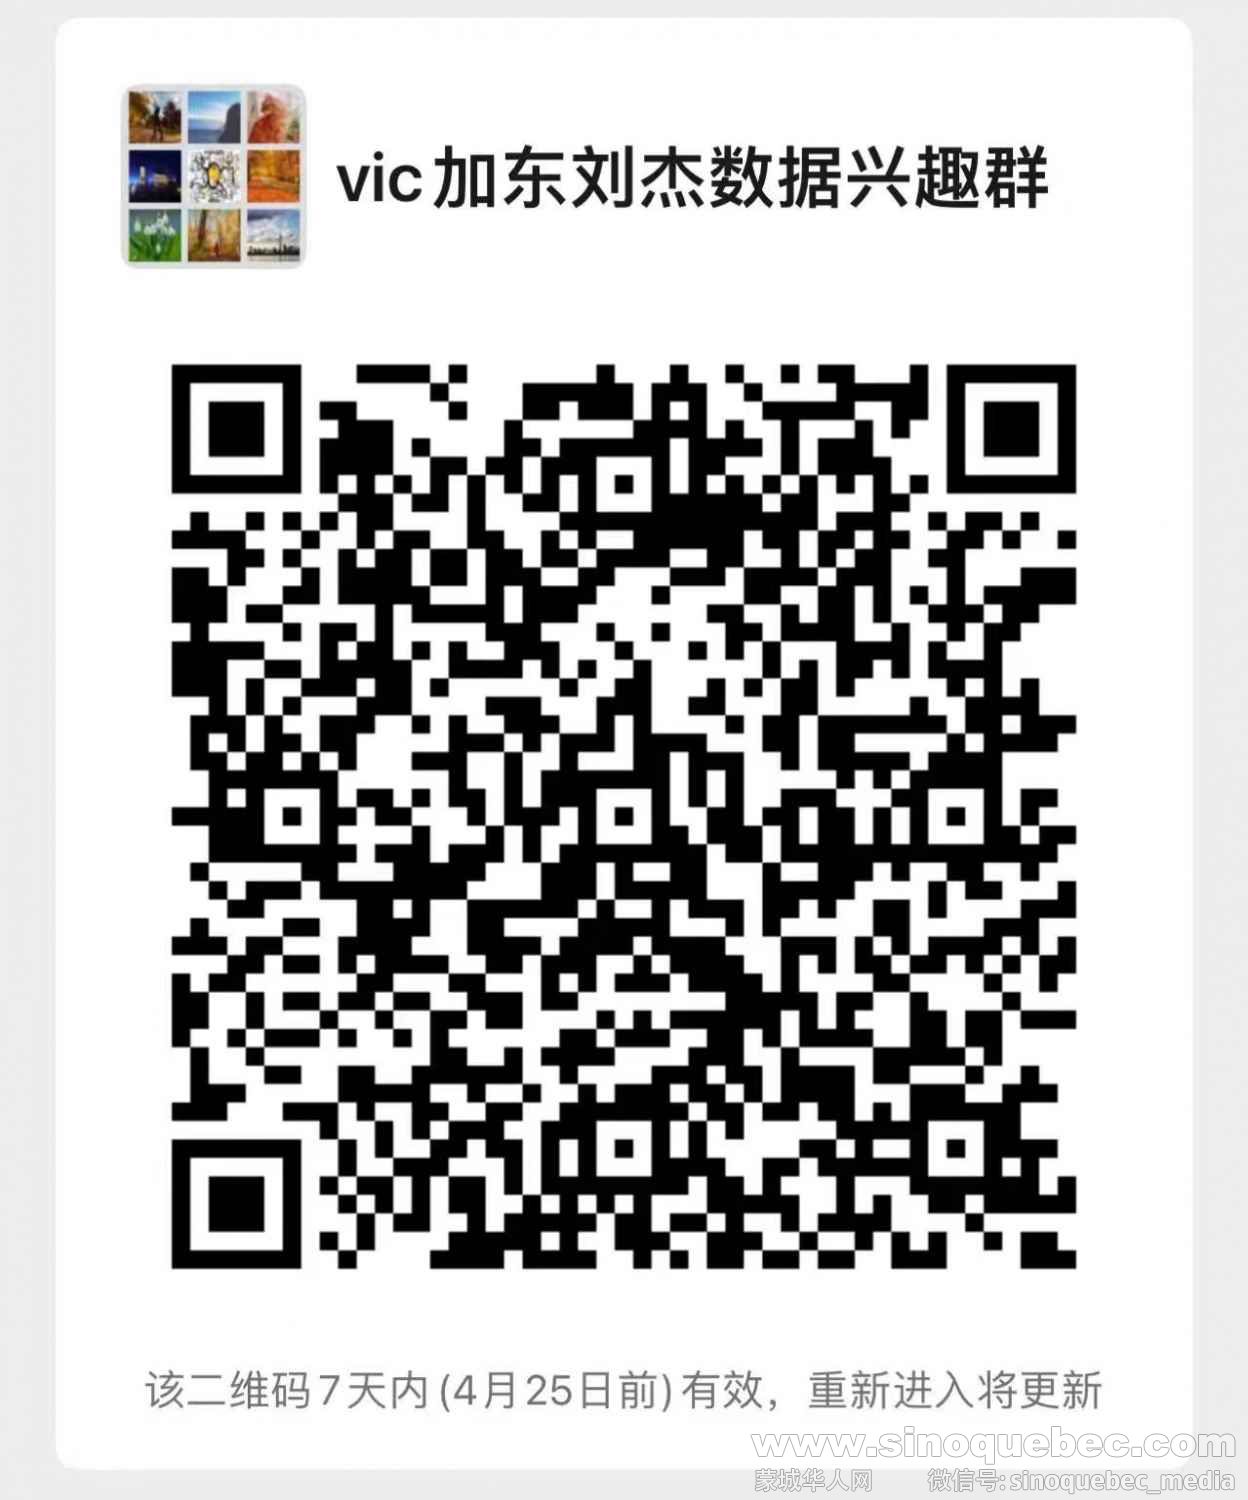 WeChat Image_20220420170556.jpg